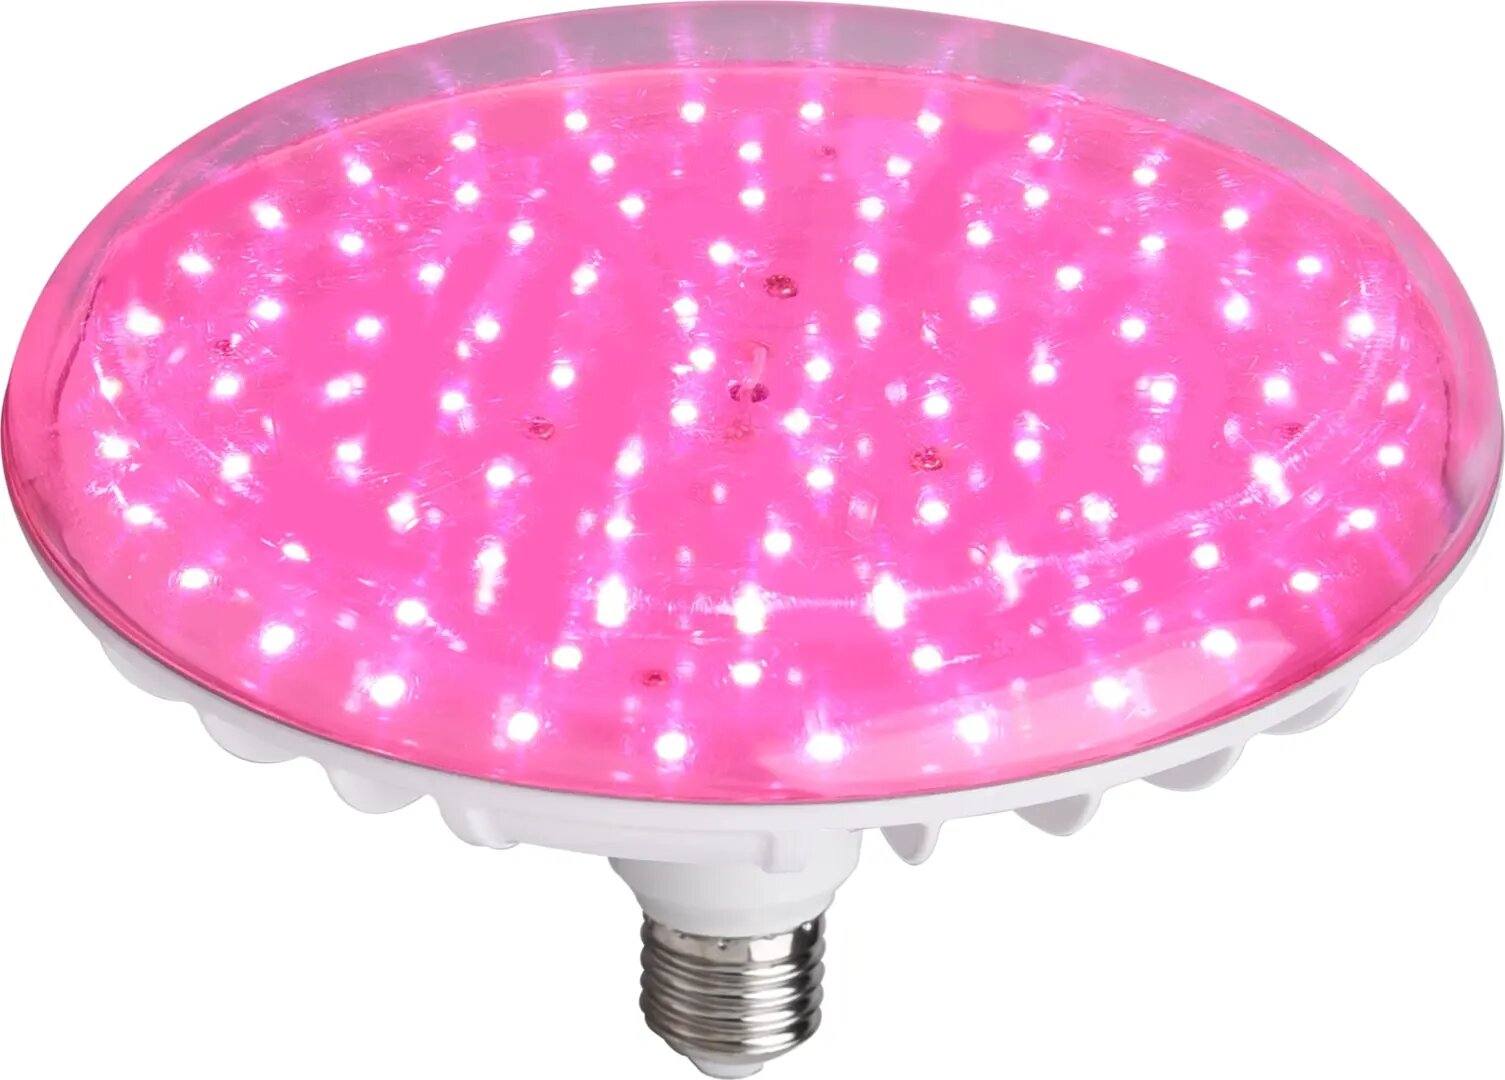 Фитолампа светодиодная для растений Ecotec E27 220-240 В 60 Вт 600 лм диск розовый свет